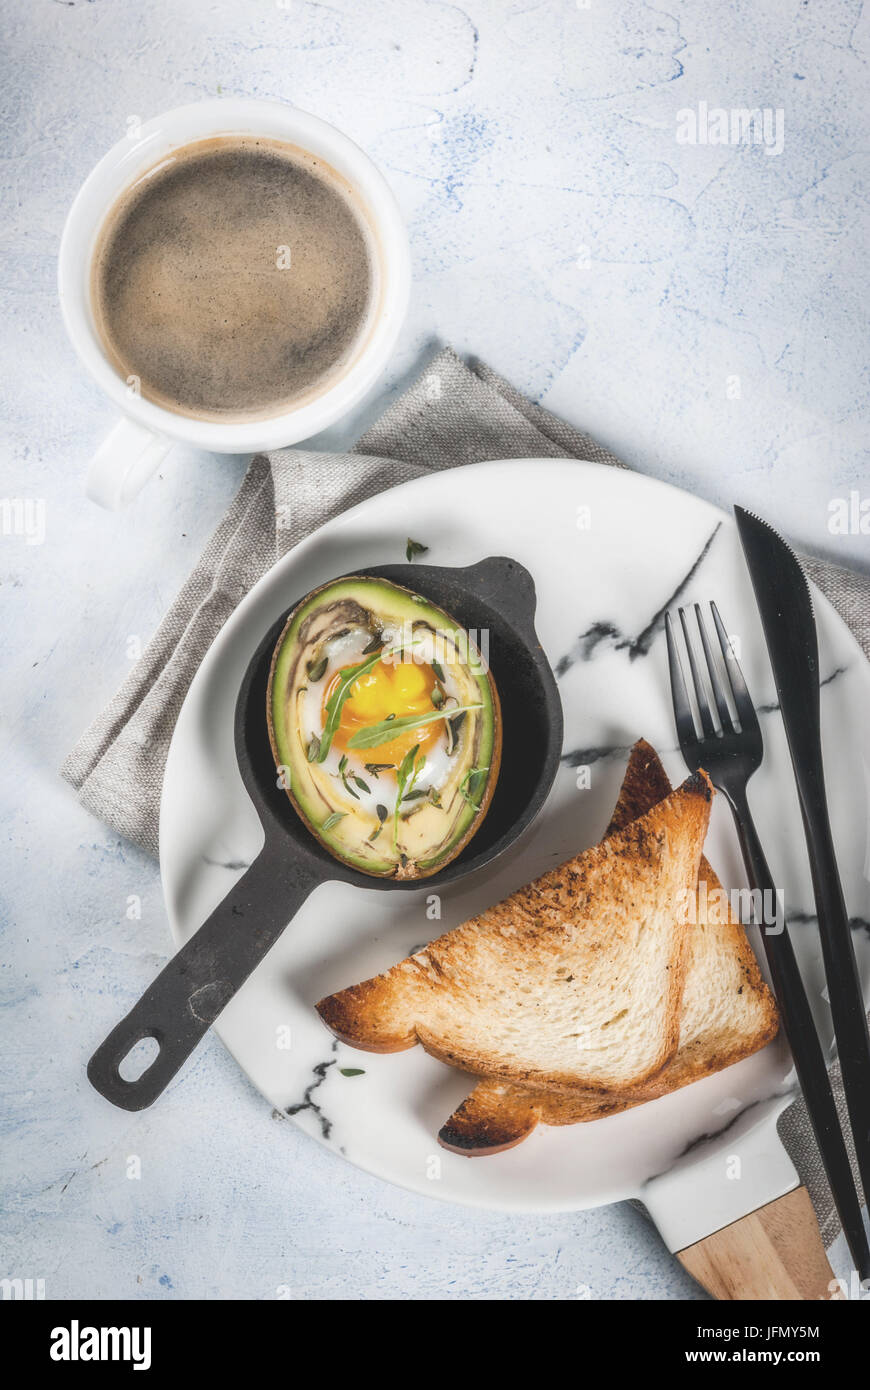 Gesunde vegane Frühstück. Ernährung. Gebackene Avocado mit Ei und frischem Salat aus Rucola, Toast und Butter. Auf eine weiße Marmorplatte, einem konkreten Leuchttisch. Stockfoto